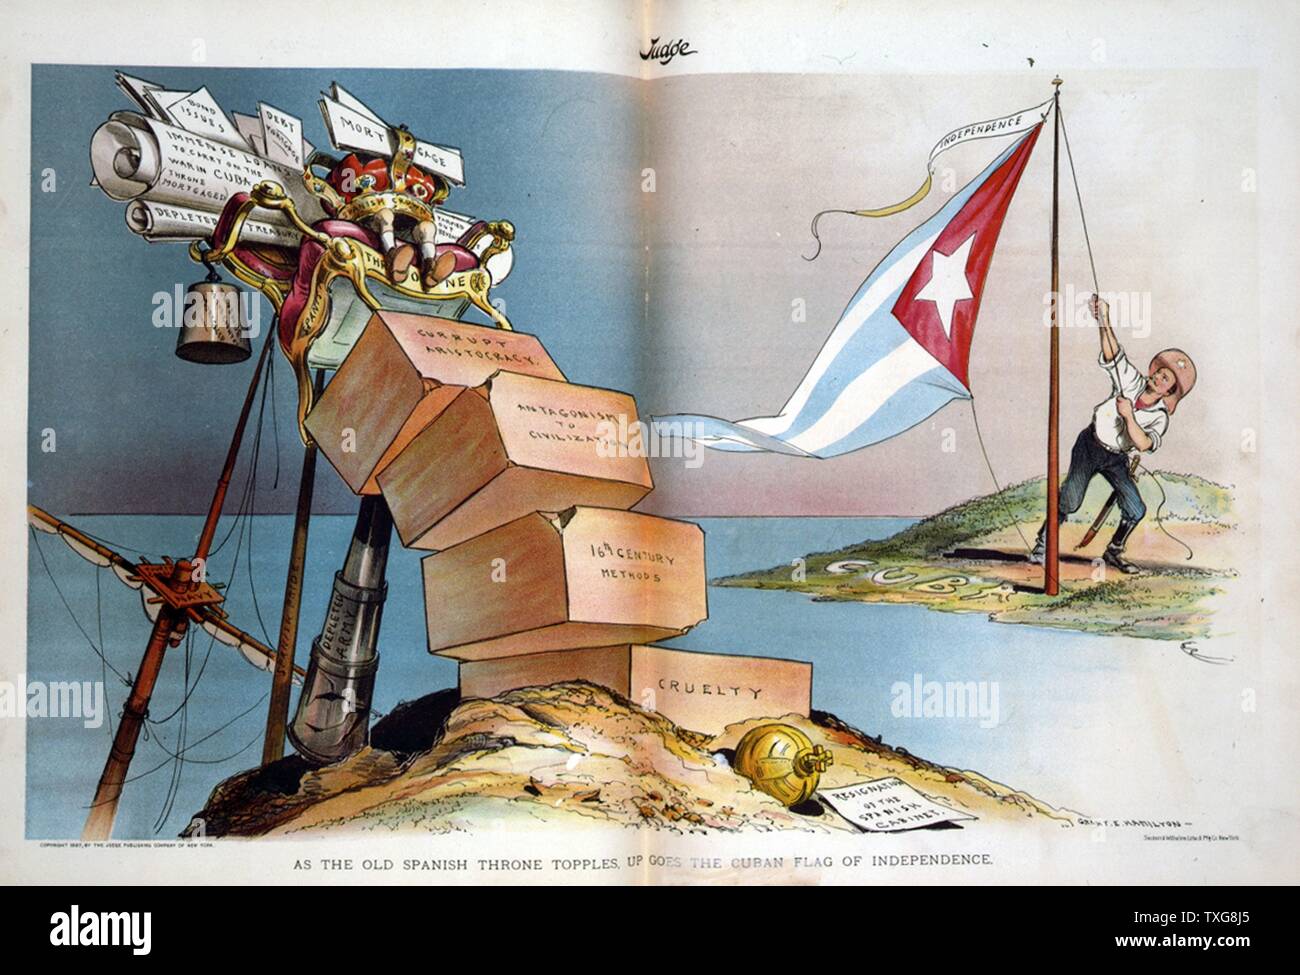 Spanisch-amerikanischen Krieg 1898: Spanien verlor ihr reich und die Vereinigten Staaten als regionale Macht in Südamerika und der Karibik Karikatur zeigt Theodore Roosevelt heben die kubanische Flagge unten Wimpel mit der Aufschrift "Unabhängigkeit" Stockfoto